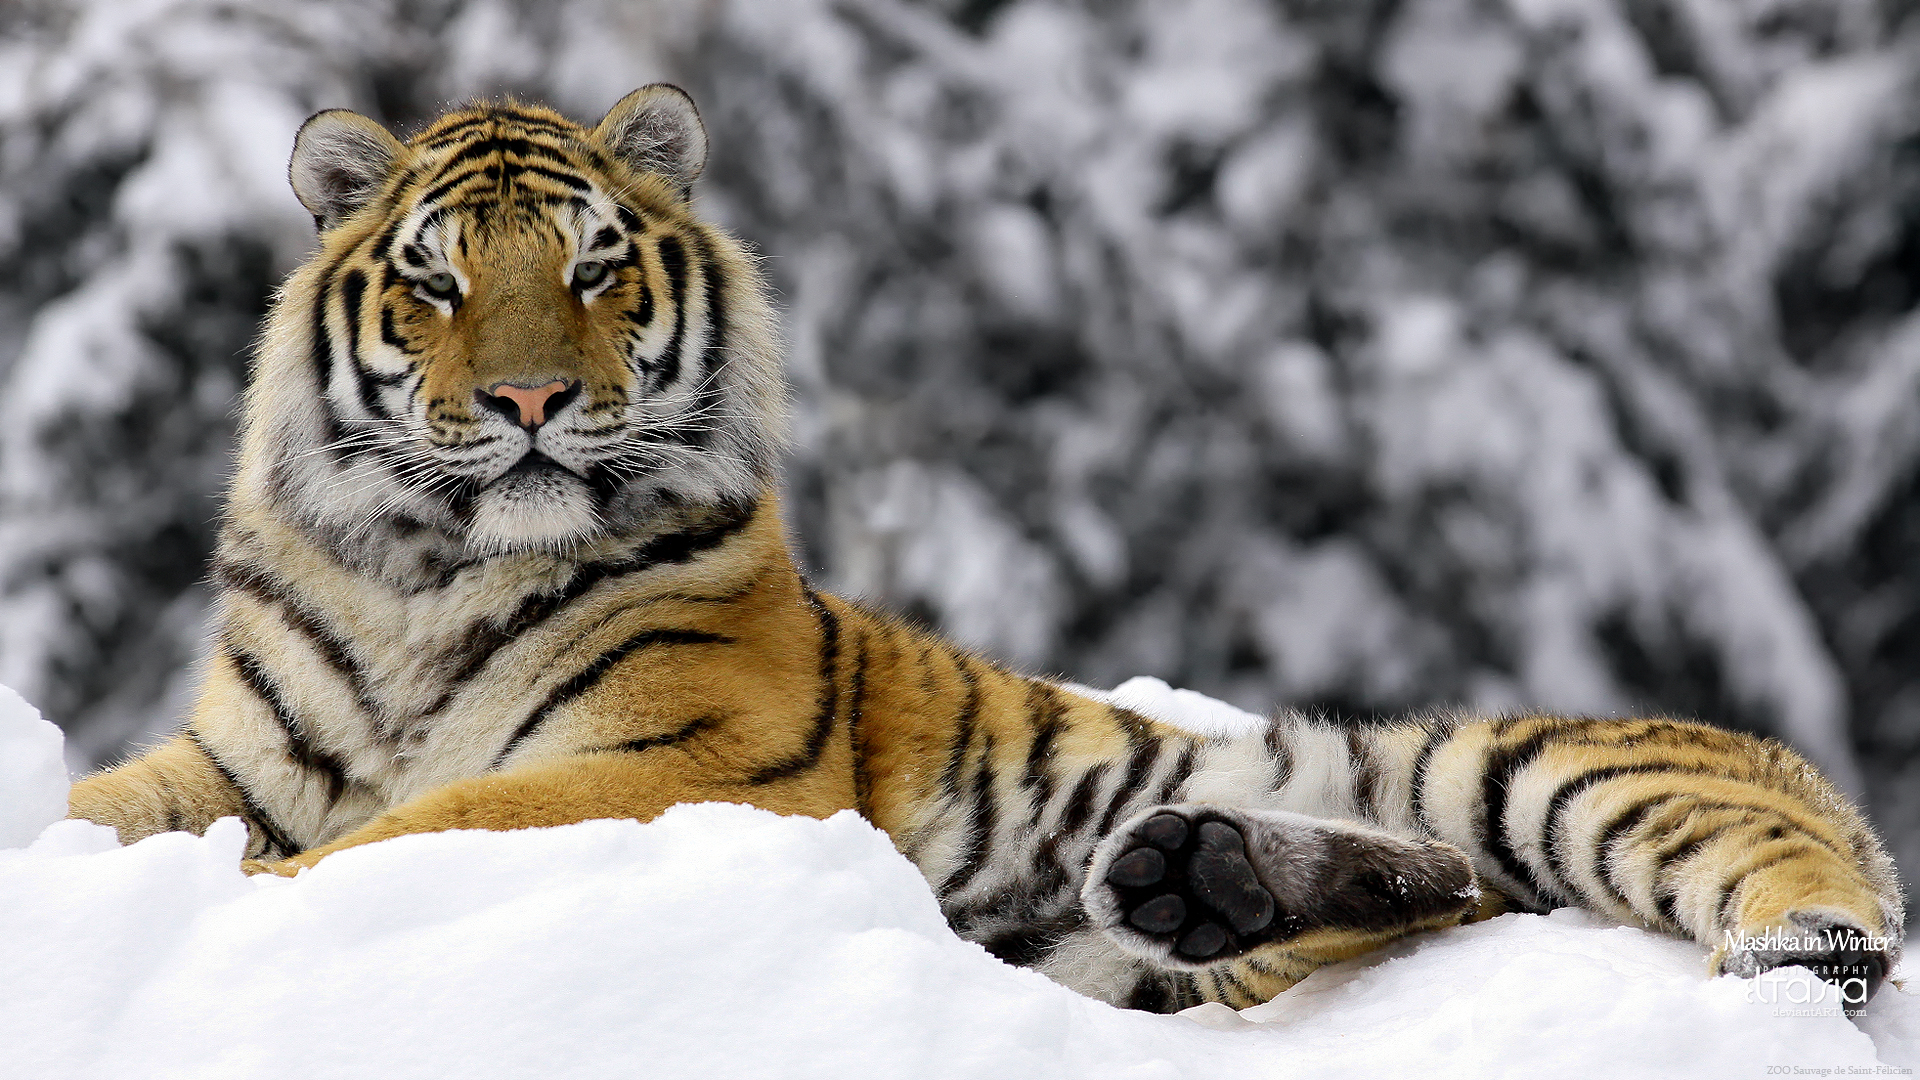 Tiger in Winter9034913600 - Tiger in Winter - Winter, Tiger